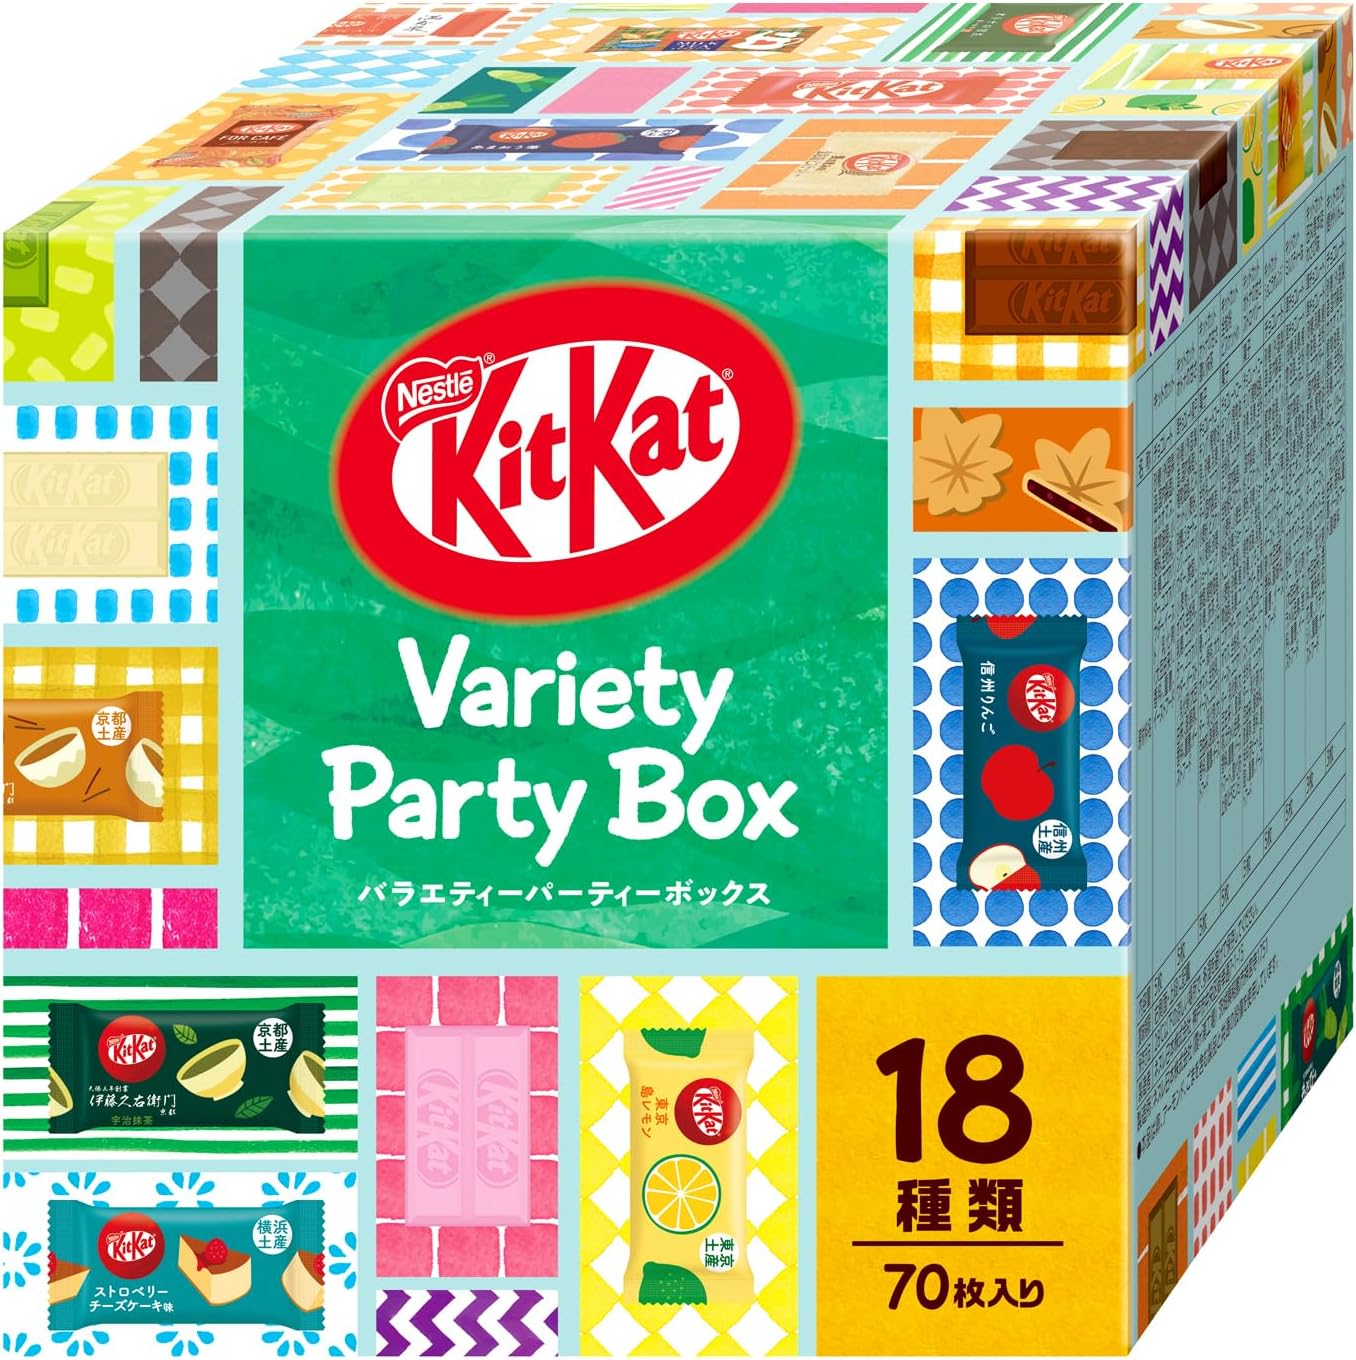 Nestlé Japanese Strawberry KitKat Bars (Pack of 3 Bags) – Japanese